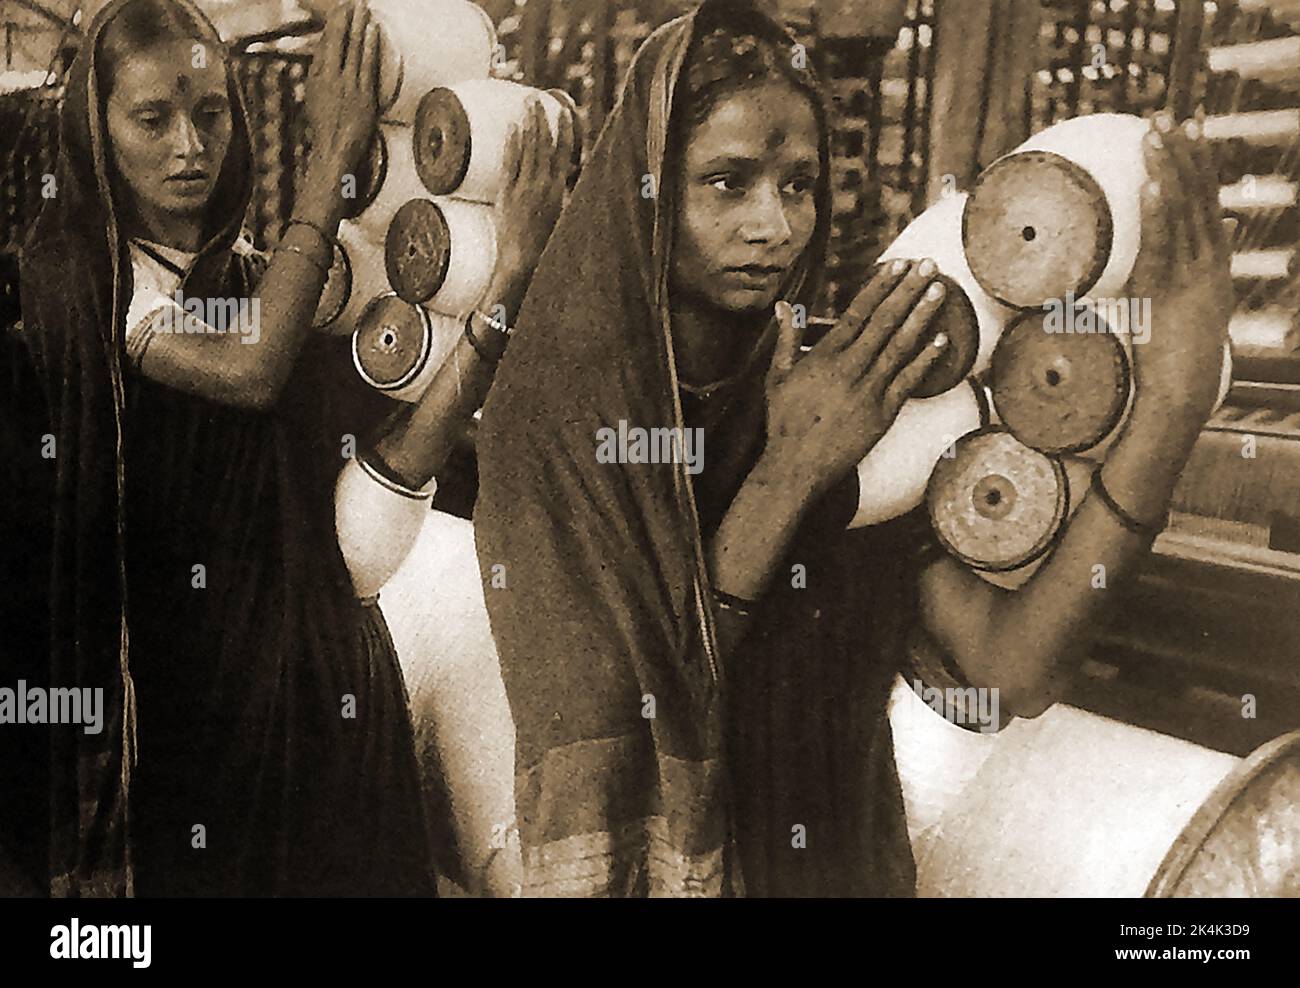 1940's (Post War) gli operai indiani trasportano le bobine in un mulino di cotone a Bombay (ora Mumbai). ---- ۱۹۴۰ کی دہائی (جنگ کے بعد) بمبئی (اب ممبئی) کی ایک کاٹن مل میں ہندوستانی مزدور بوبن لے کر جا رہے ہیں۔ ------- 1940 के दशक (युद्ध के बाद) भारतीय श्रमिक बॉम्बे (अब मुंबई) में एक कपास मिल में बोबिन ले जाते हैं। Foto Stock